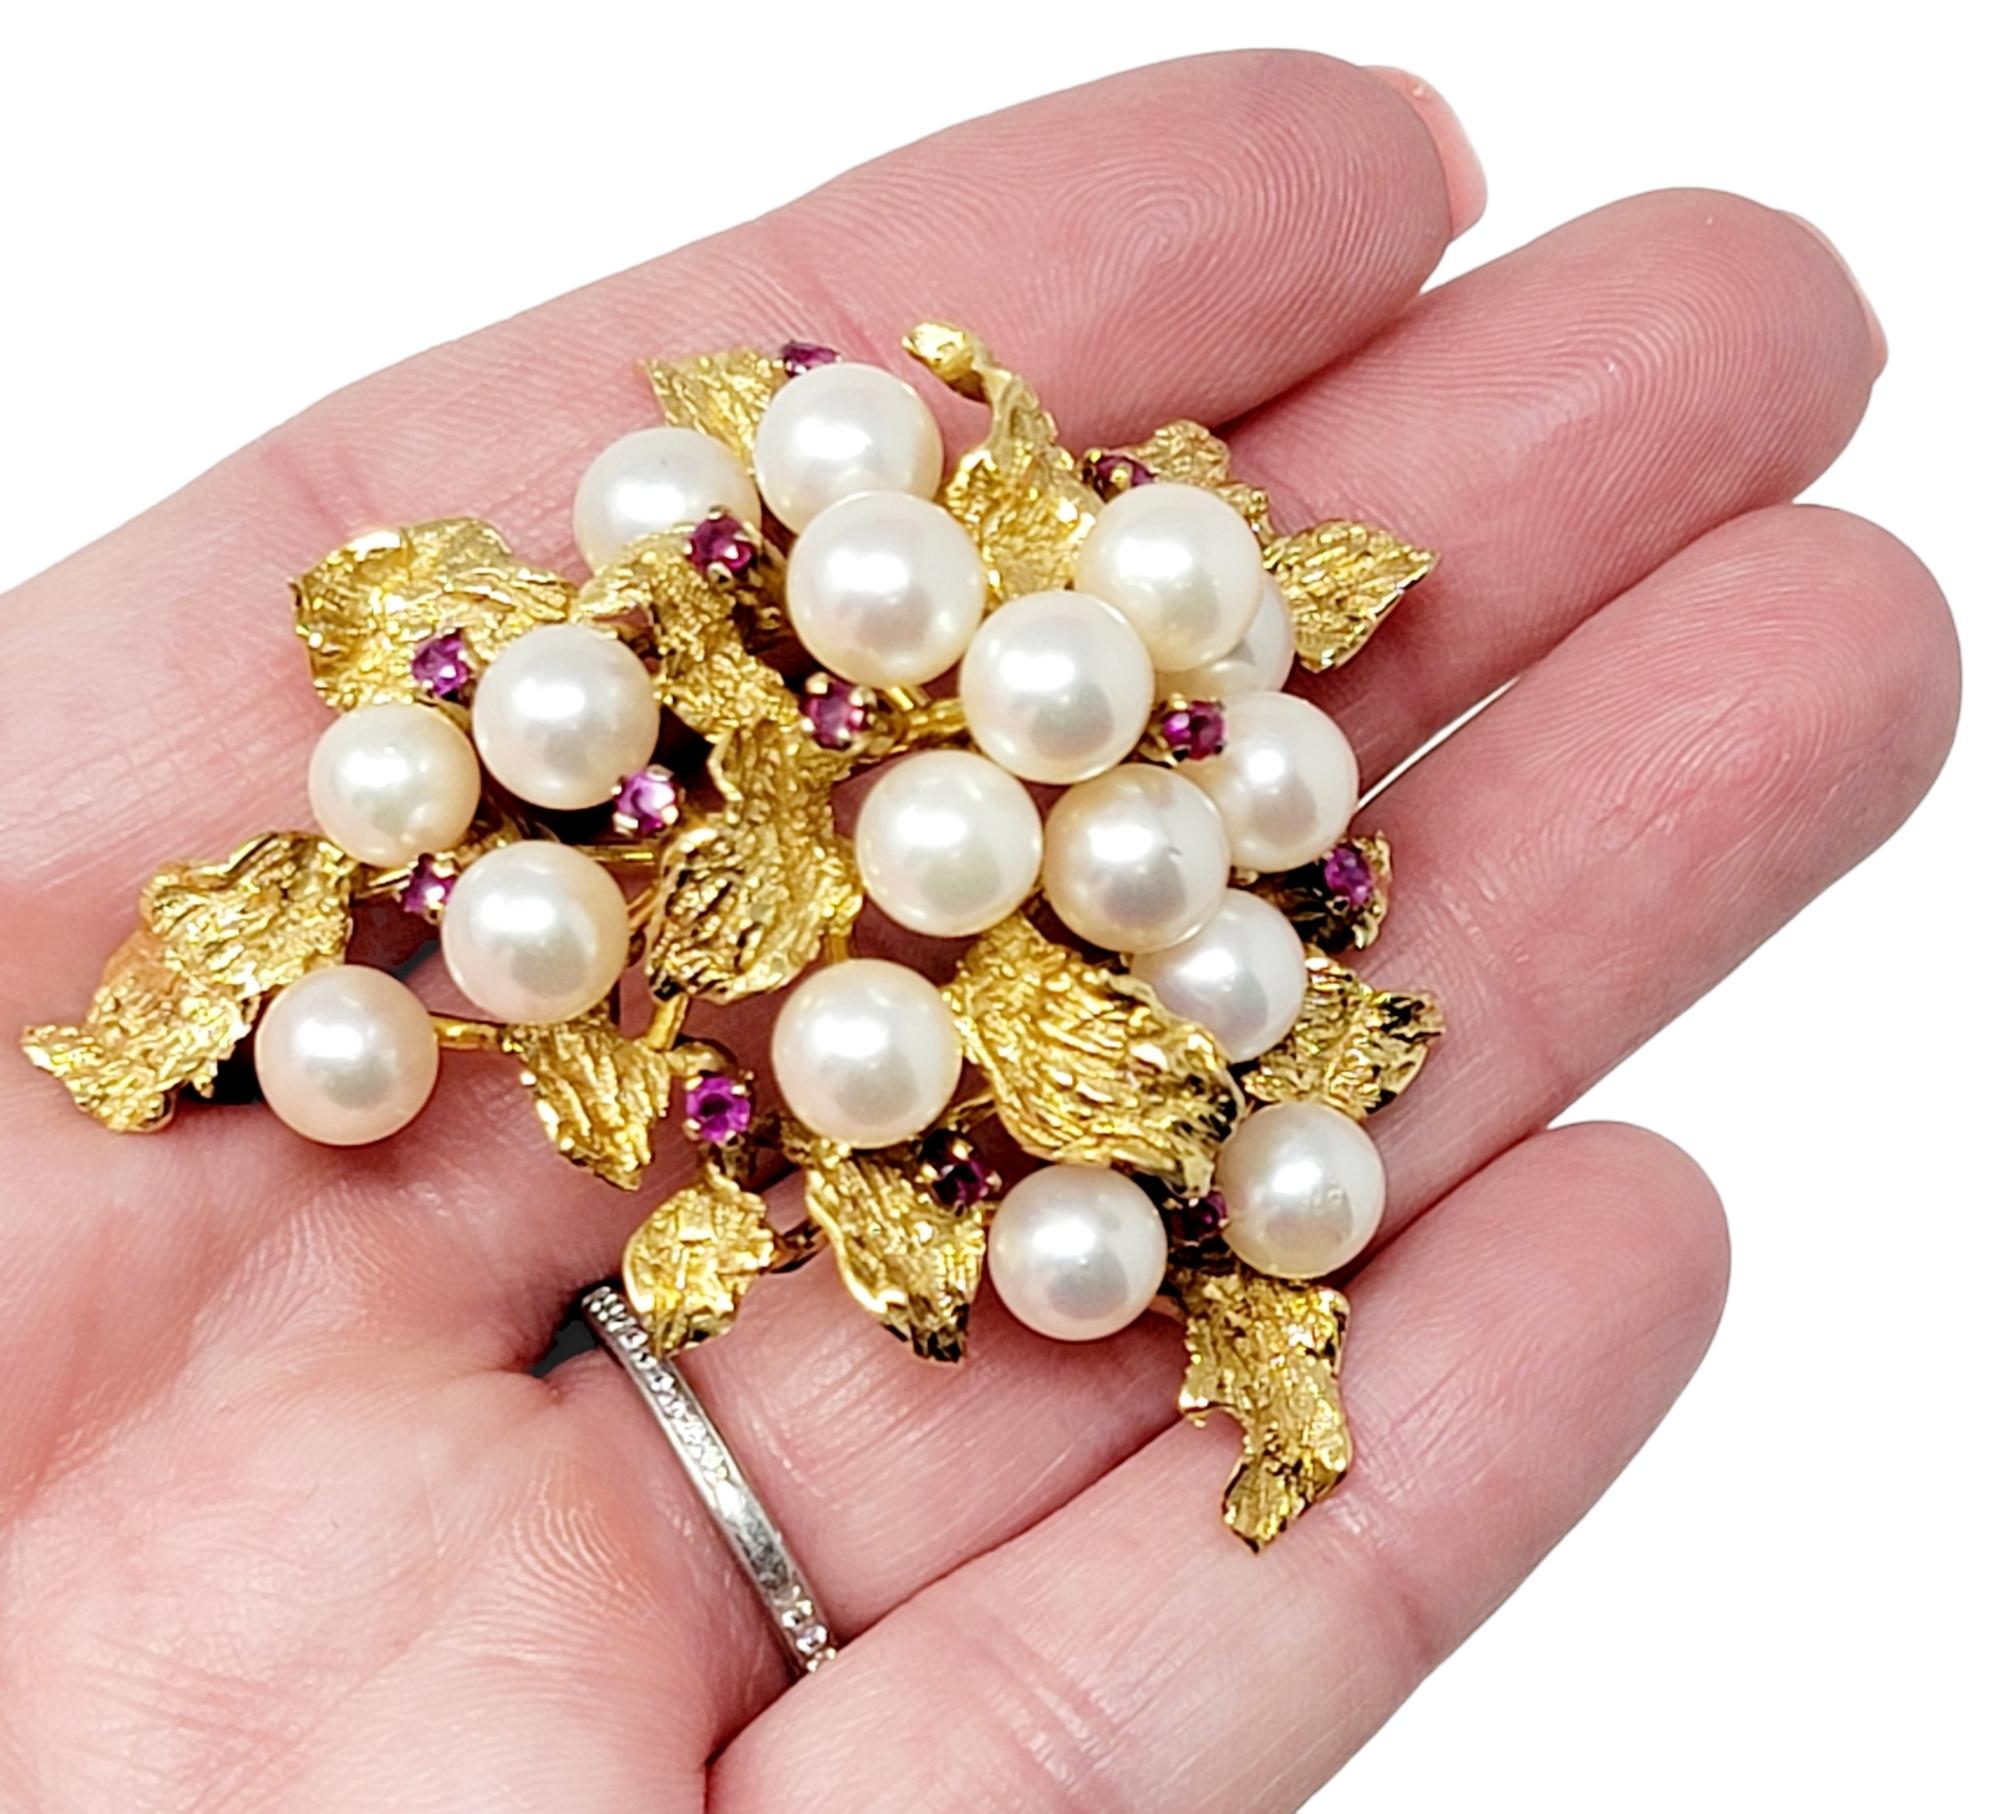 Cette broche vintage exquise en perles et rubis rehaussera tous les articles auxquels elle est associée. Le design ultra féminin rayonne absolument, offrant éclat, brillance et sophistication. Cette magnifique broche est fabriquée en jaune 14 carats